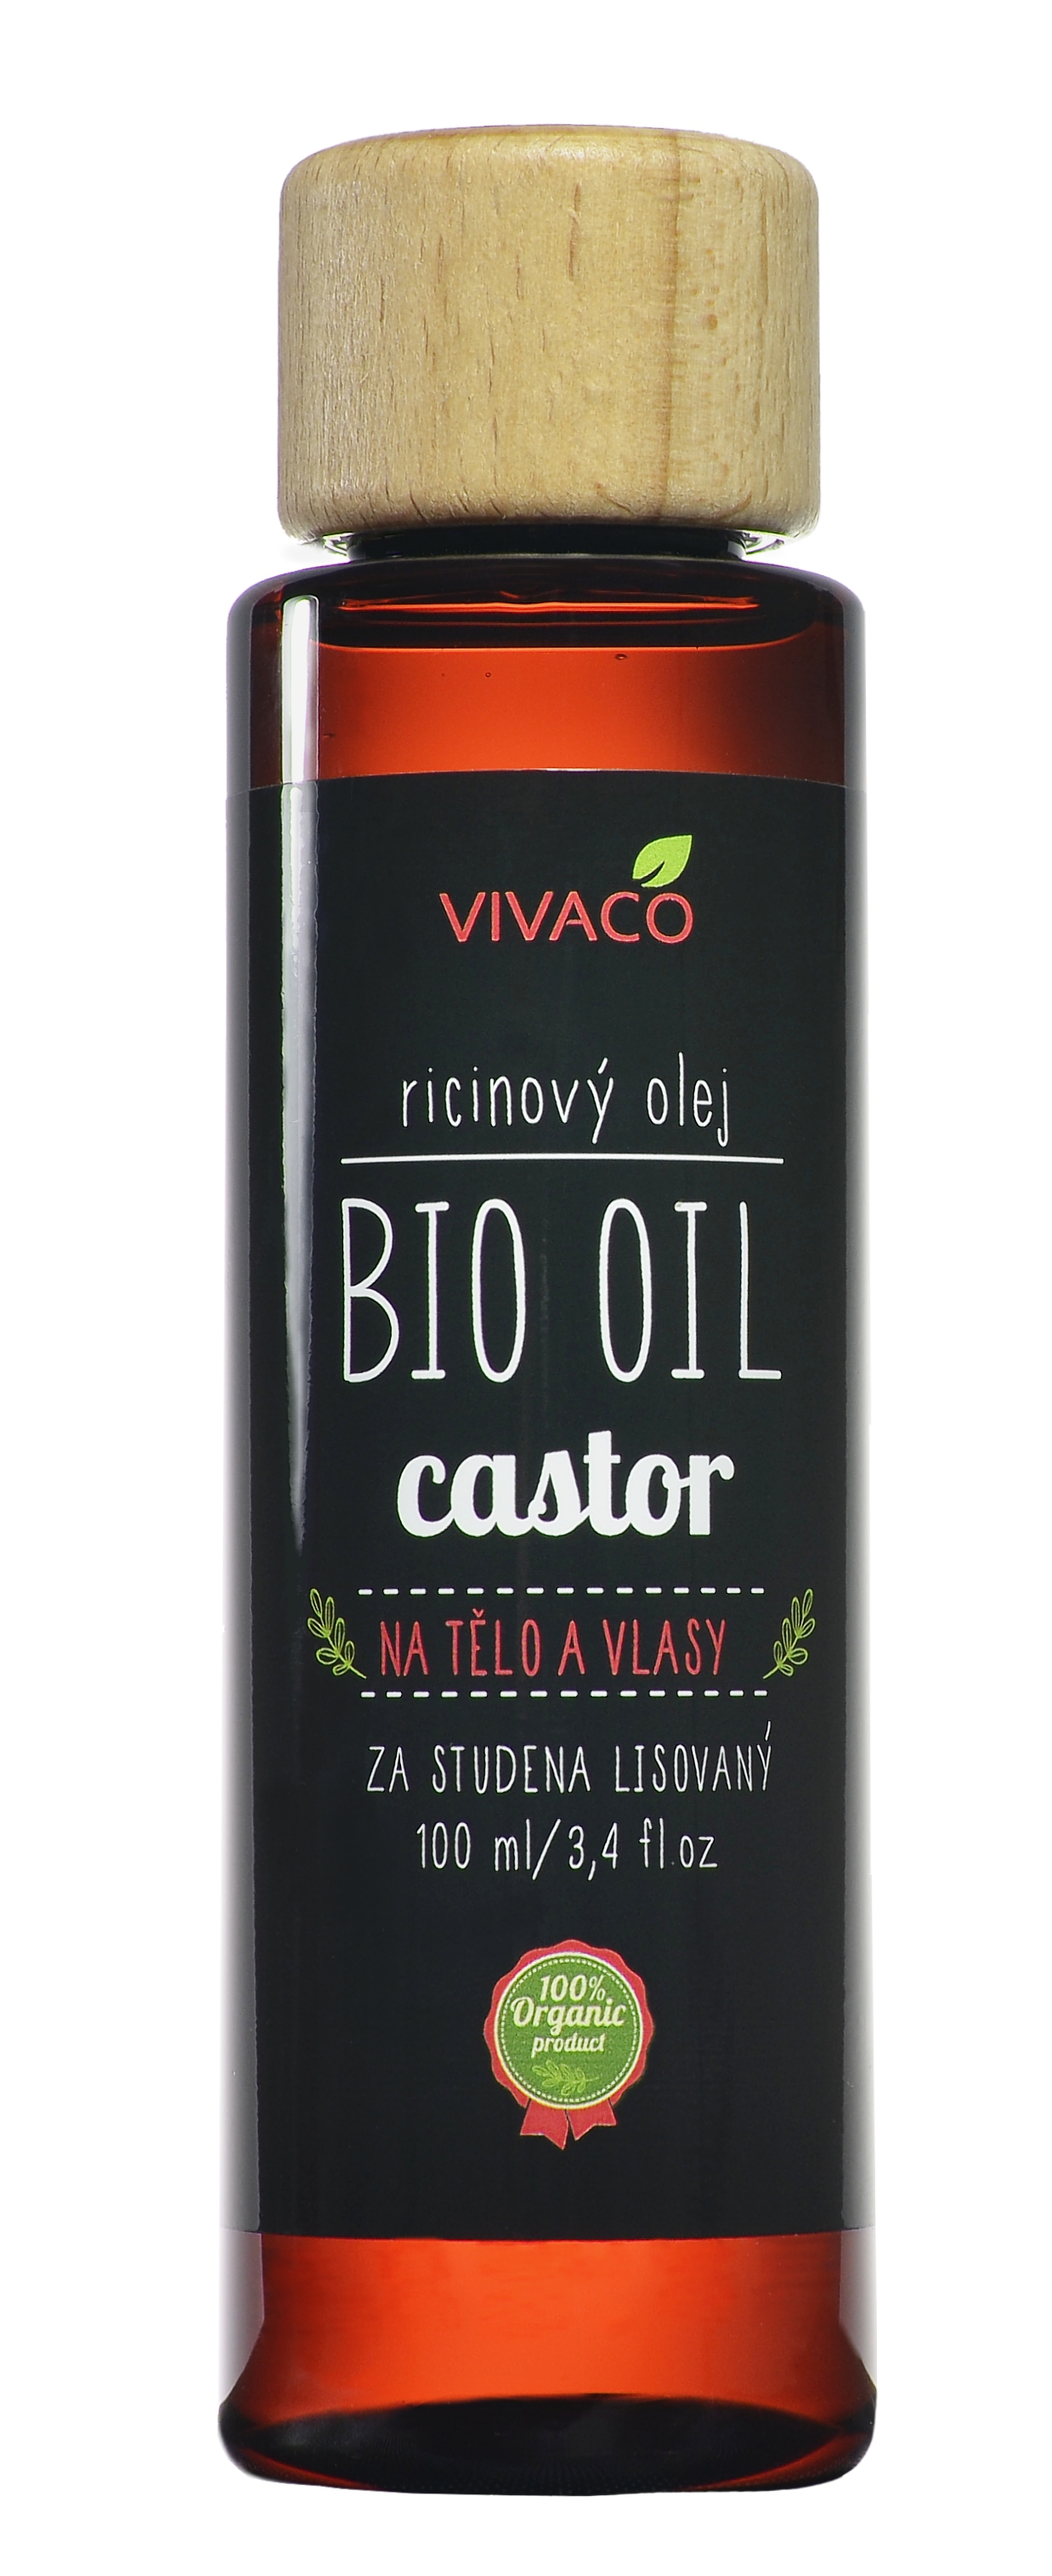 Vivaco Ricinový olej na tělo a vlasy BIO 100ml